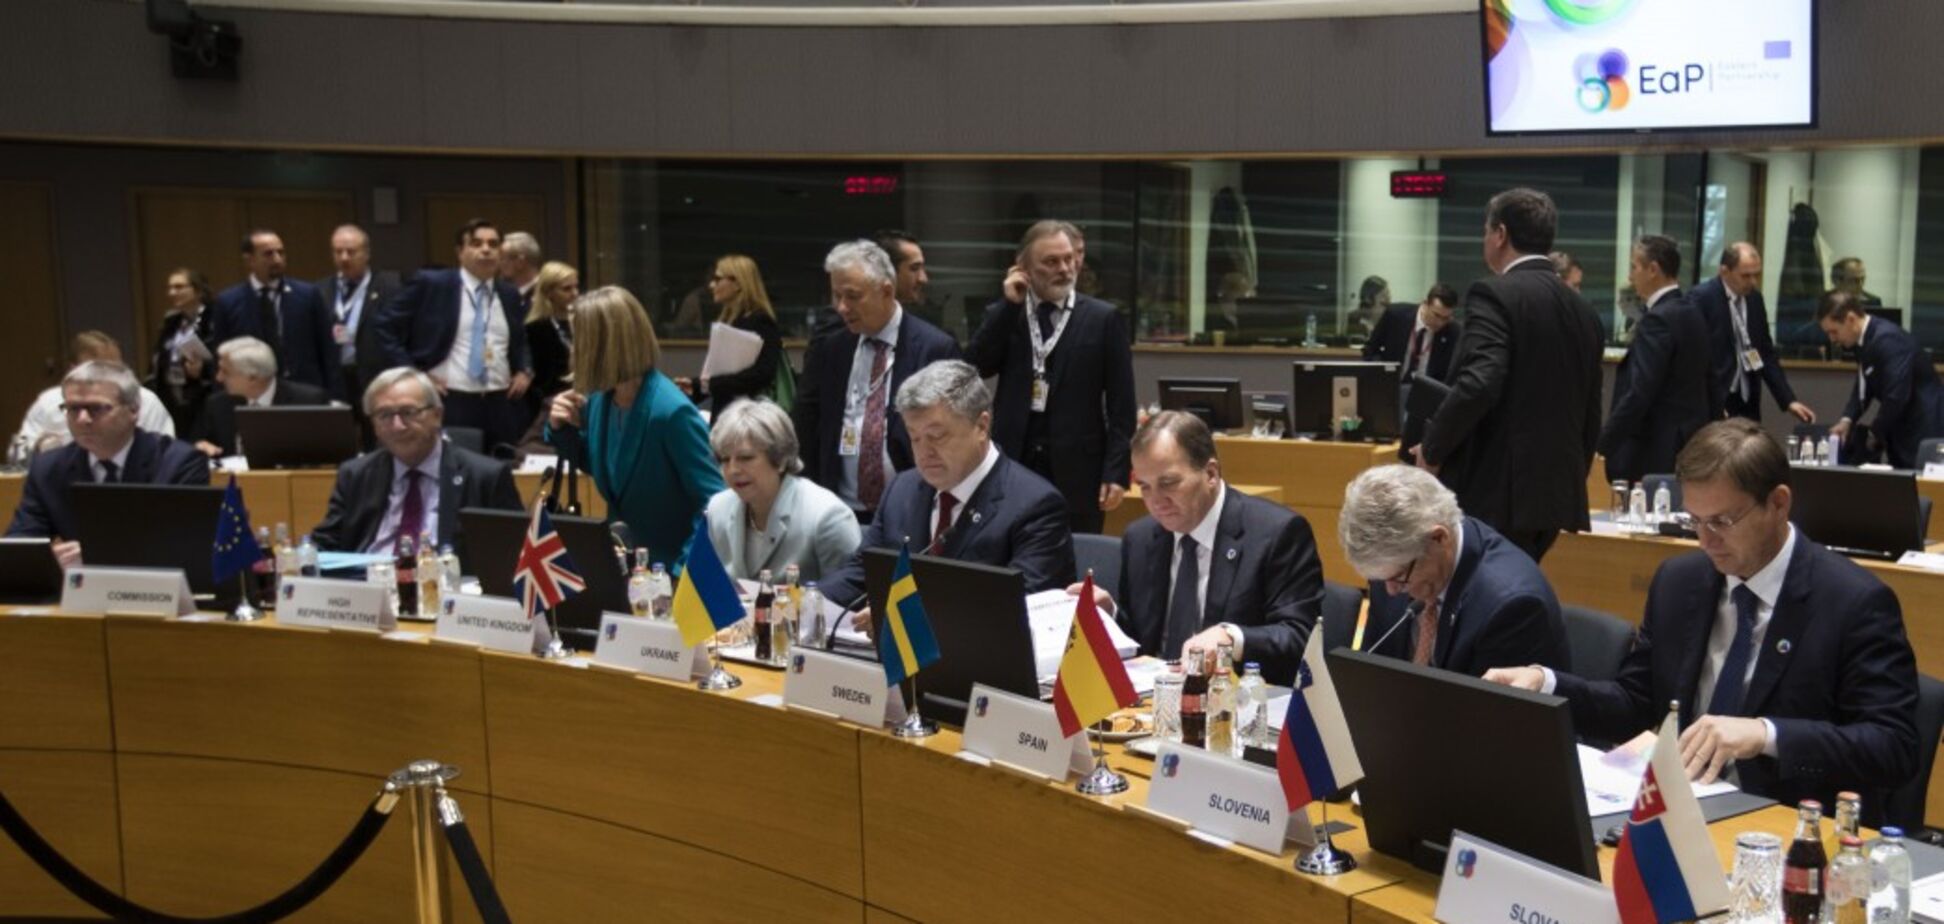 'Хотим больше Европы': Порошенко выступил с важным заявлением в Брюсселе